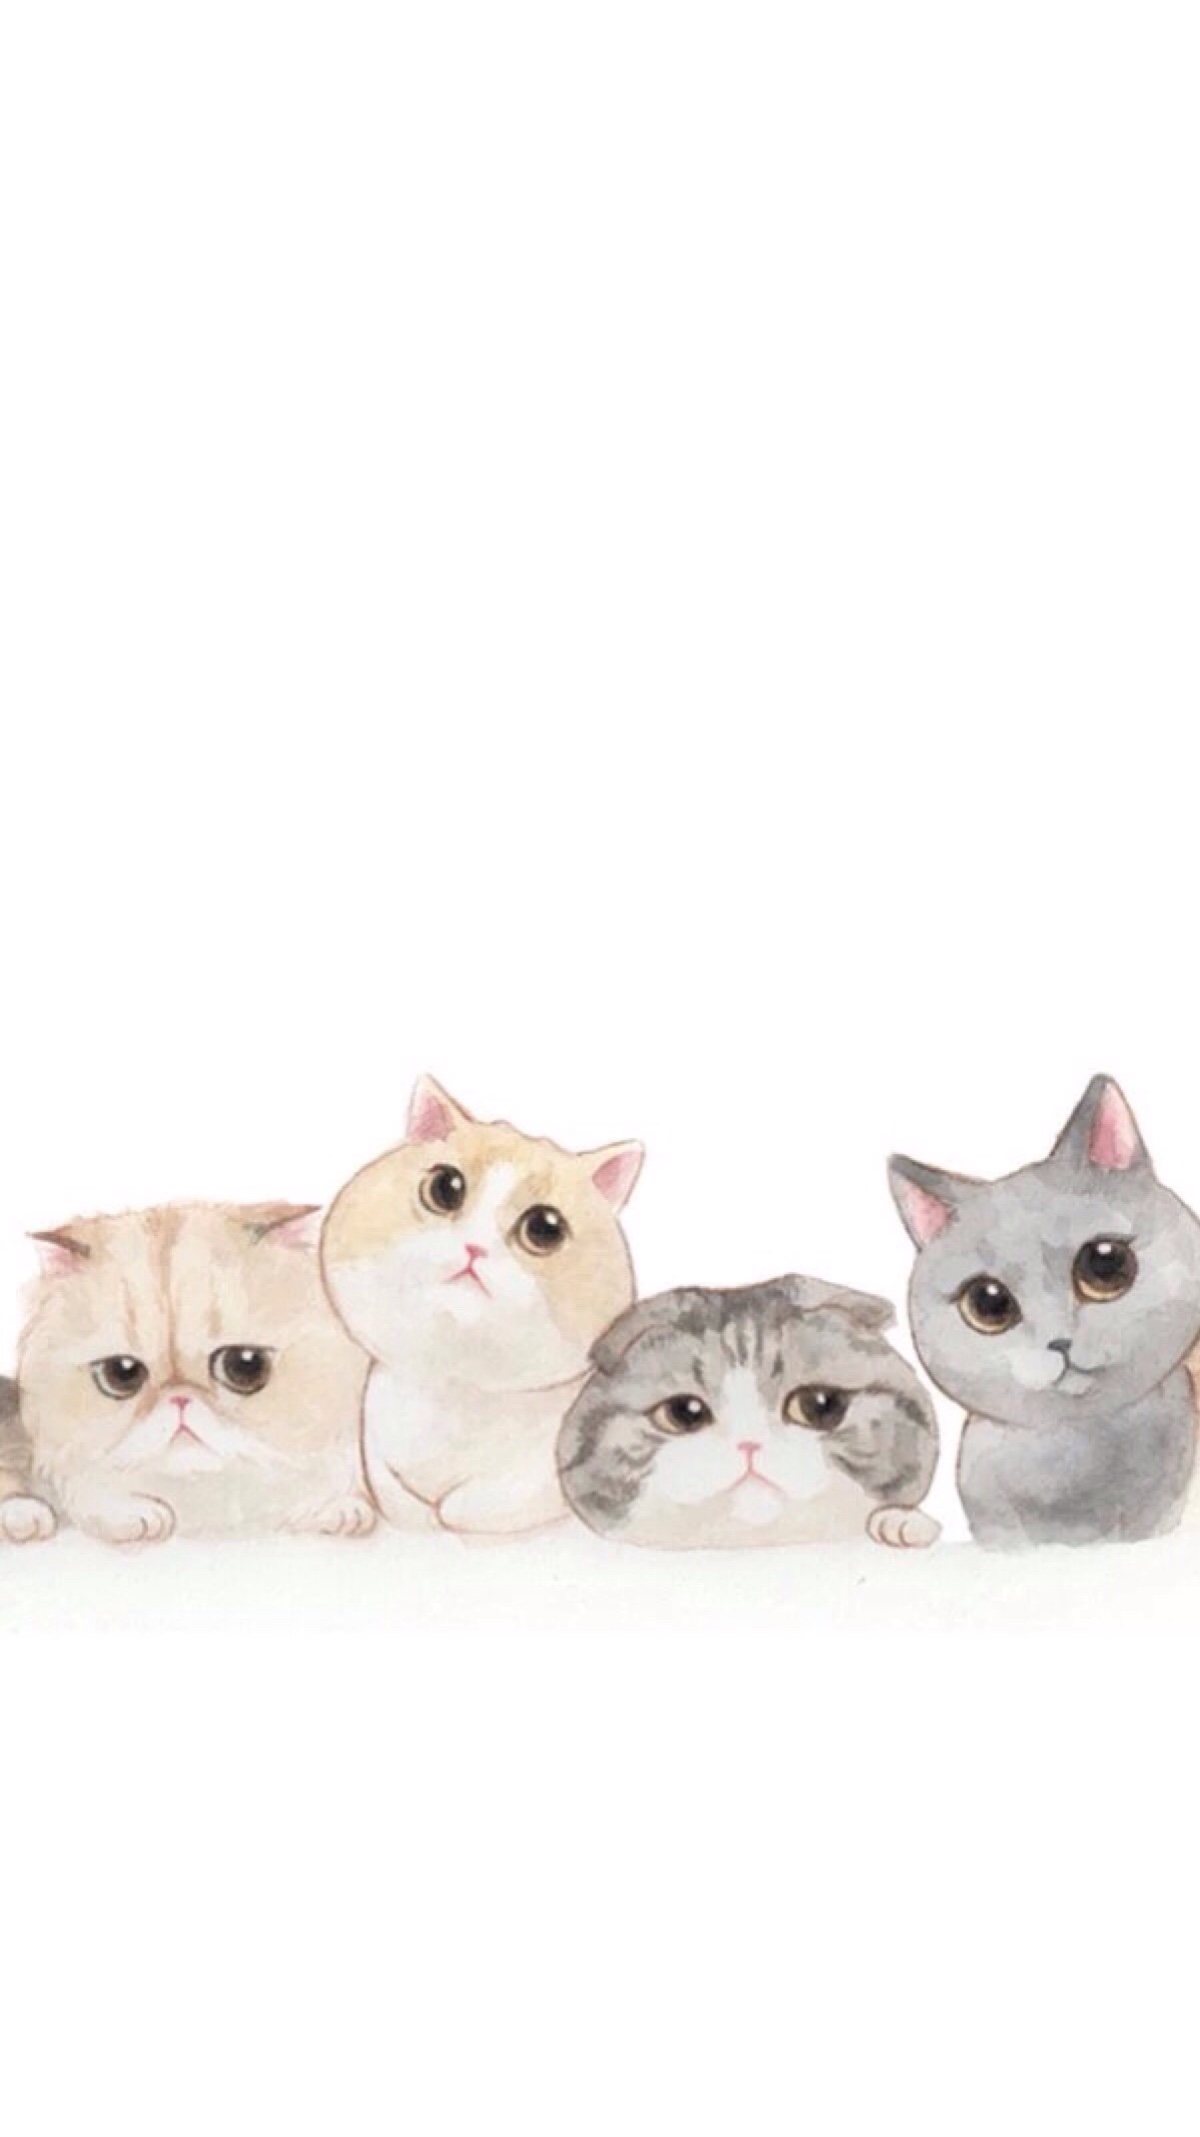 Iphone桌面卡通猫 Iphone桌面卡通猫图片分享